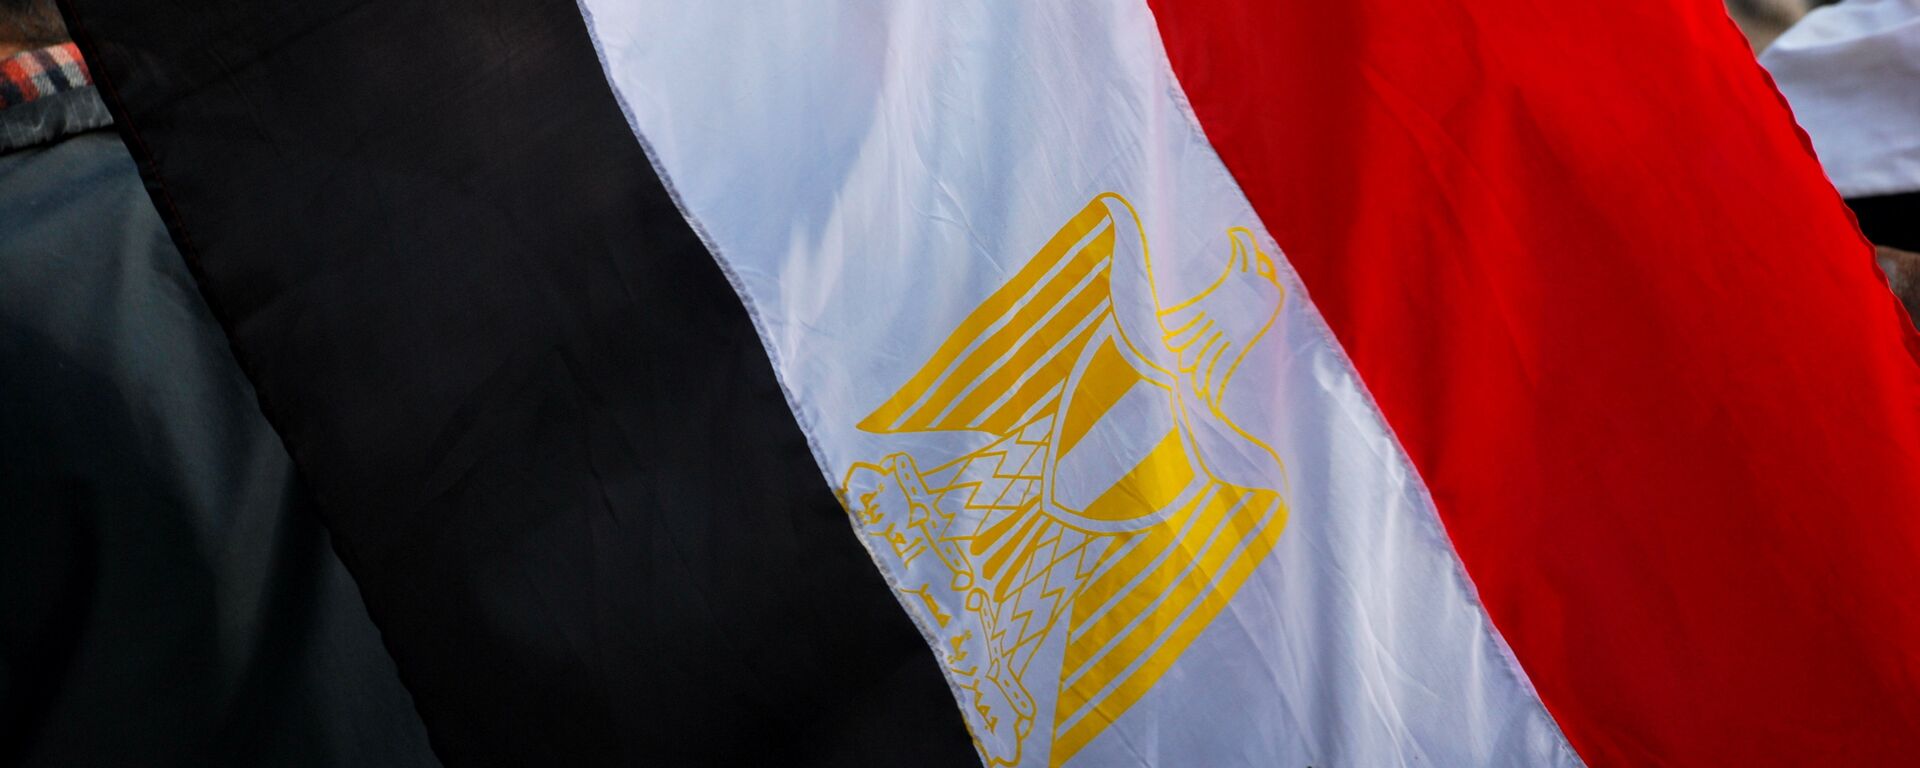 Bandera de Egipto - Sputnik Mundo, 1920, 20.09.2020